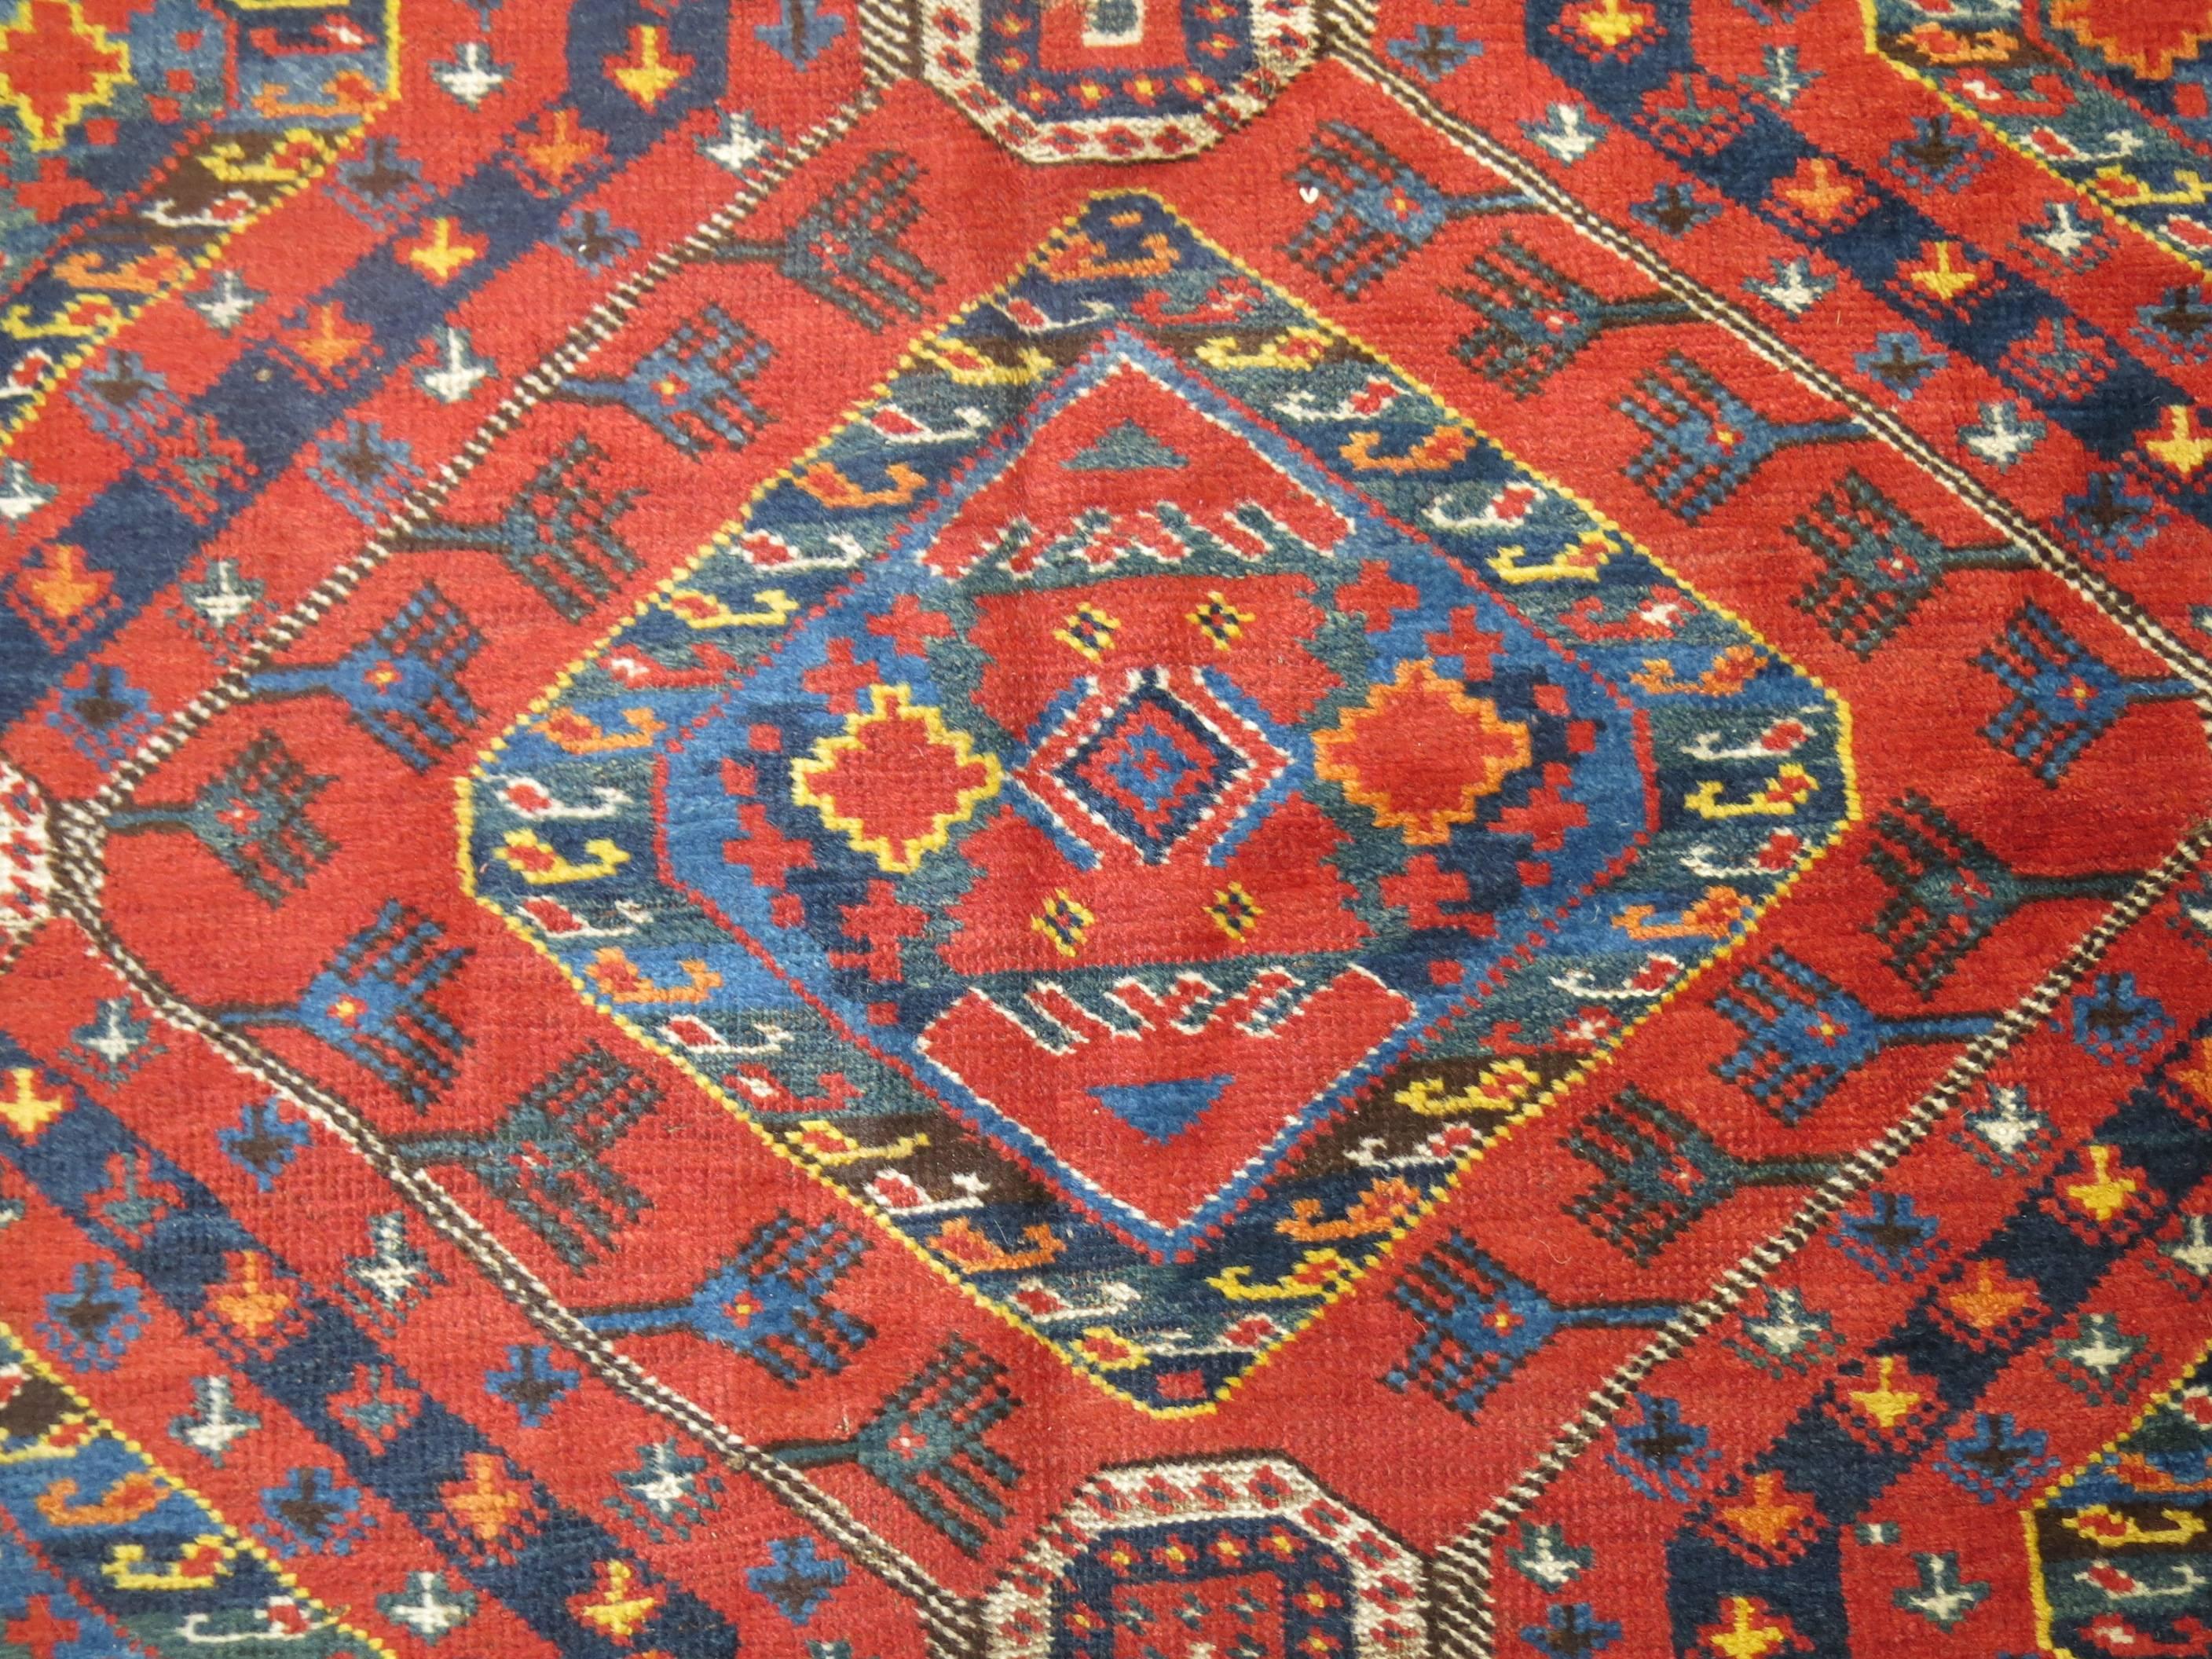 Turkmen Rustic Gallery SizeAntique Beshir Carpet For Sale